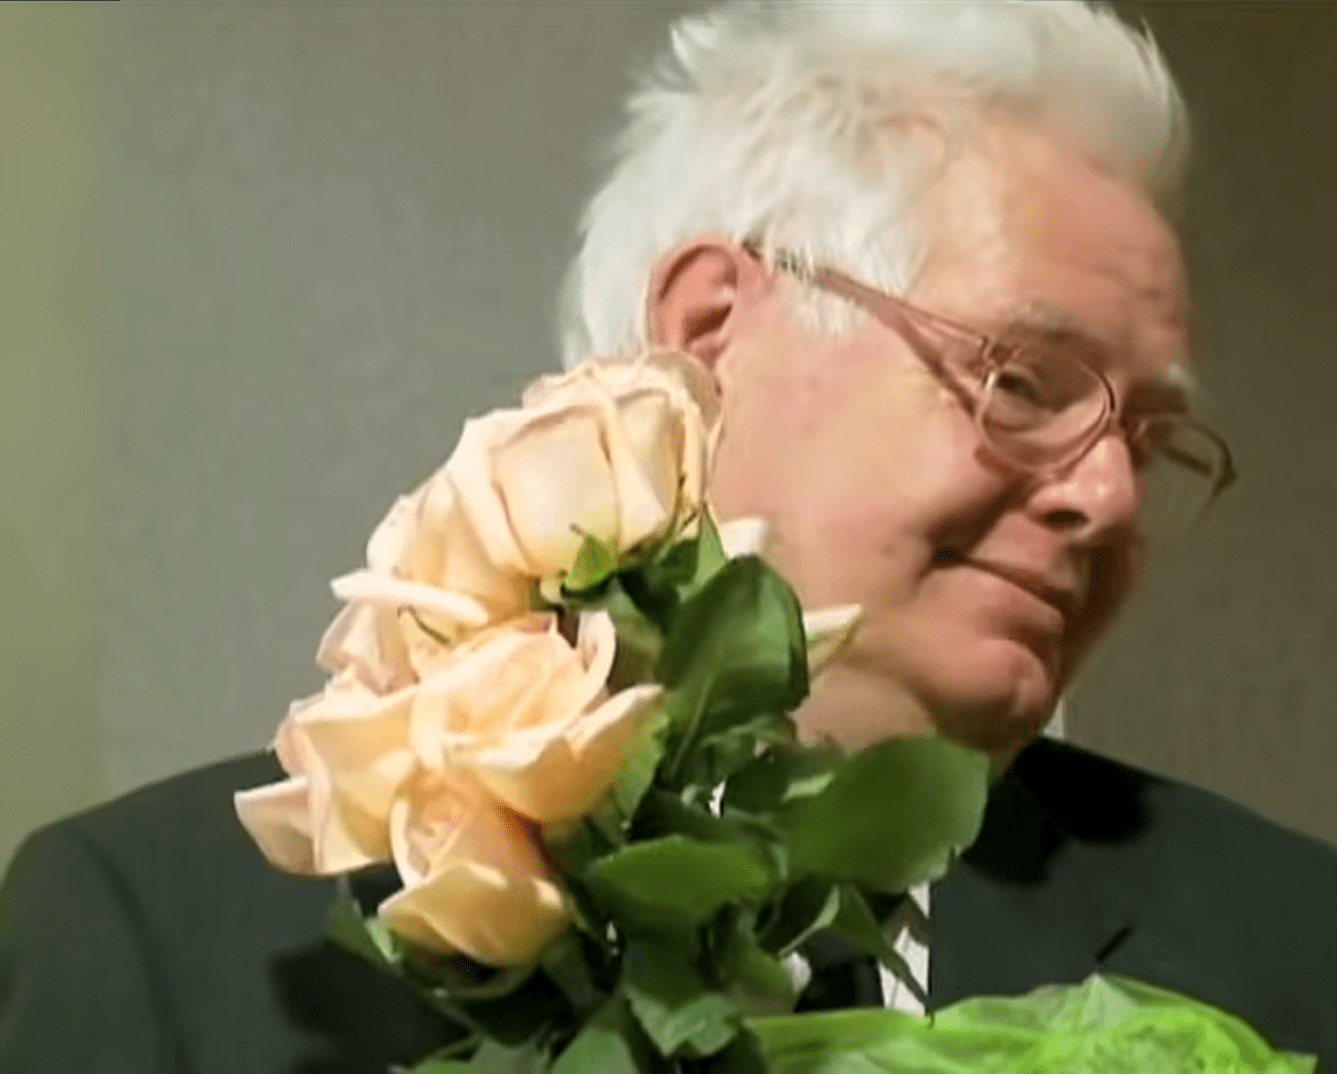 Clifford Boyson hält rosa Rosen. | Quelle: Youtube.com/ABC News